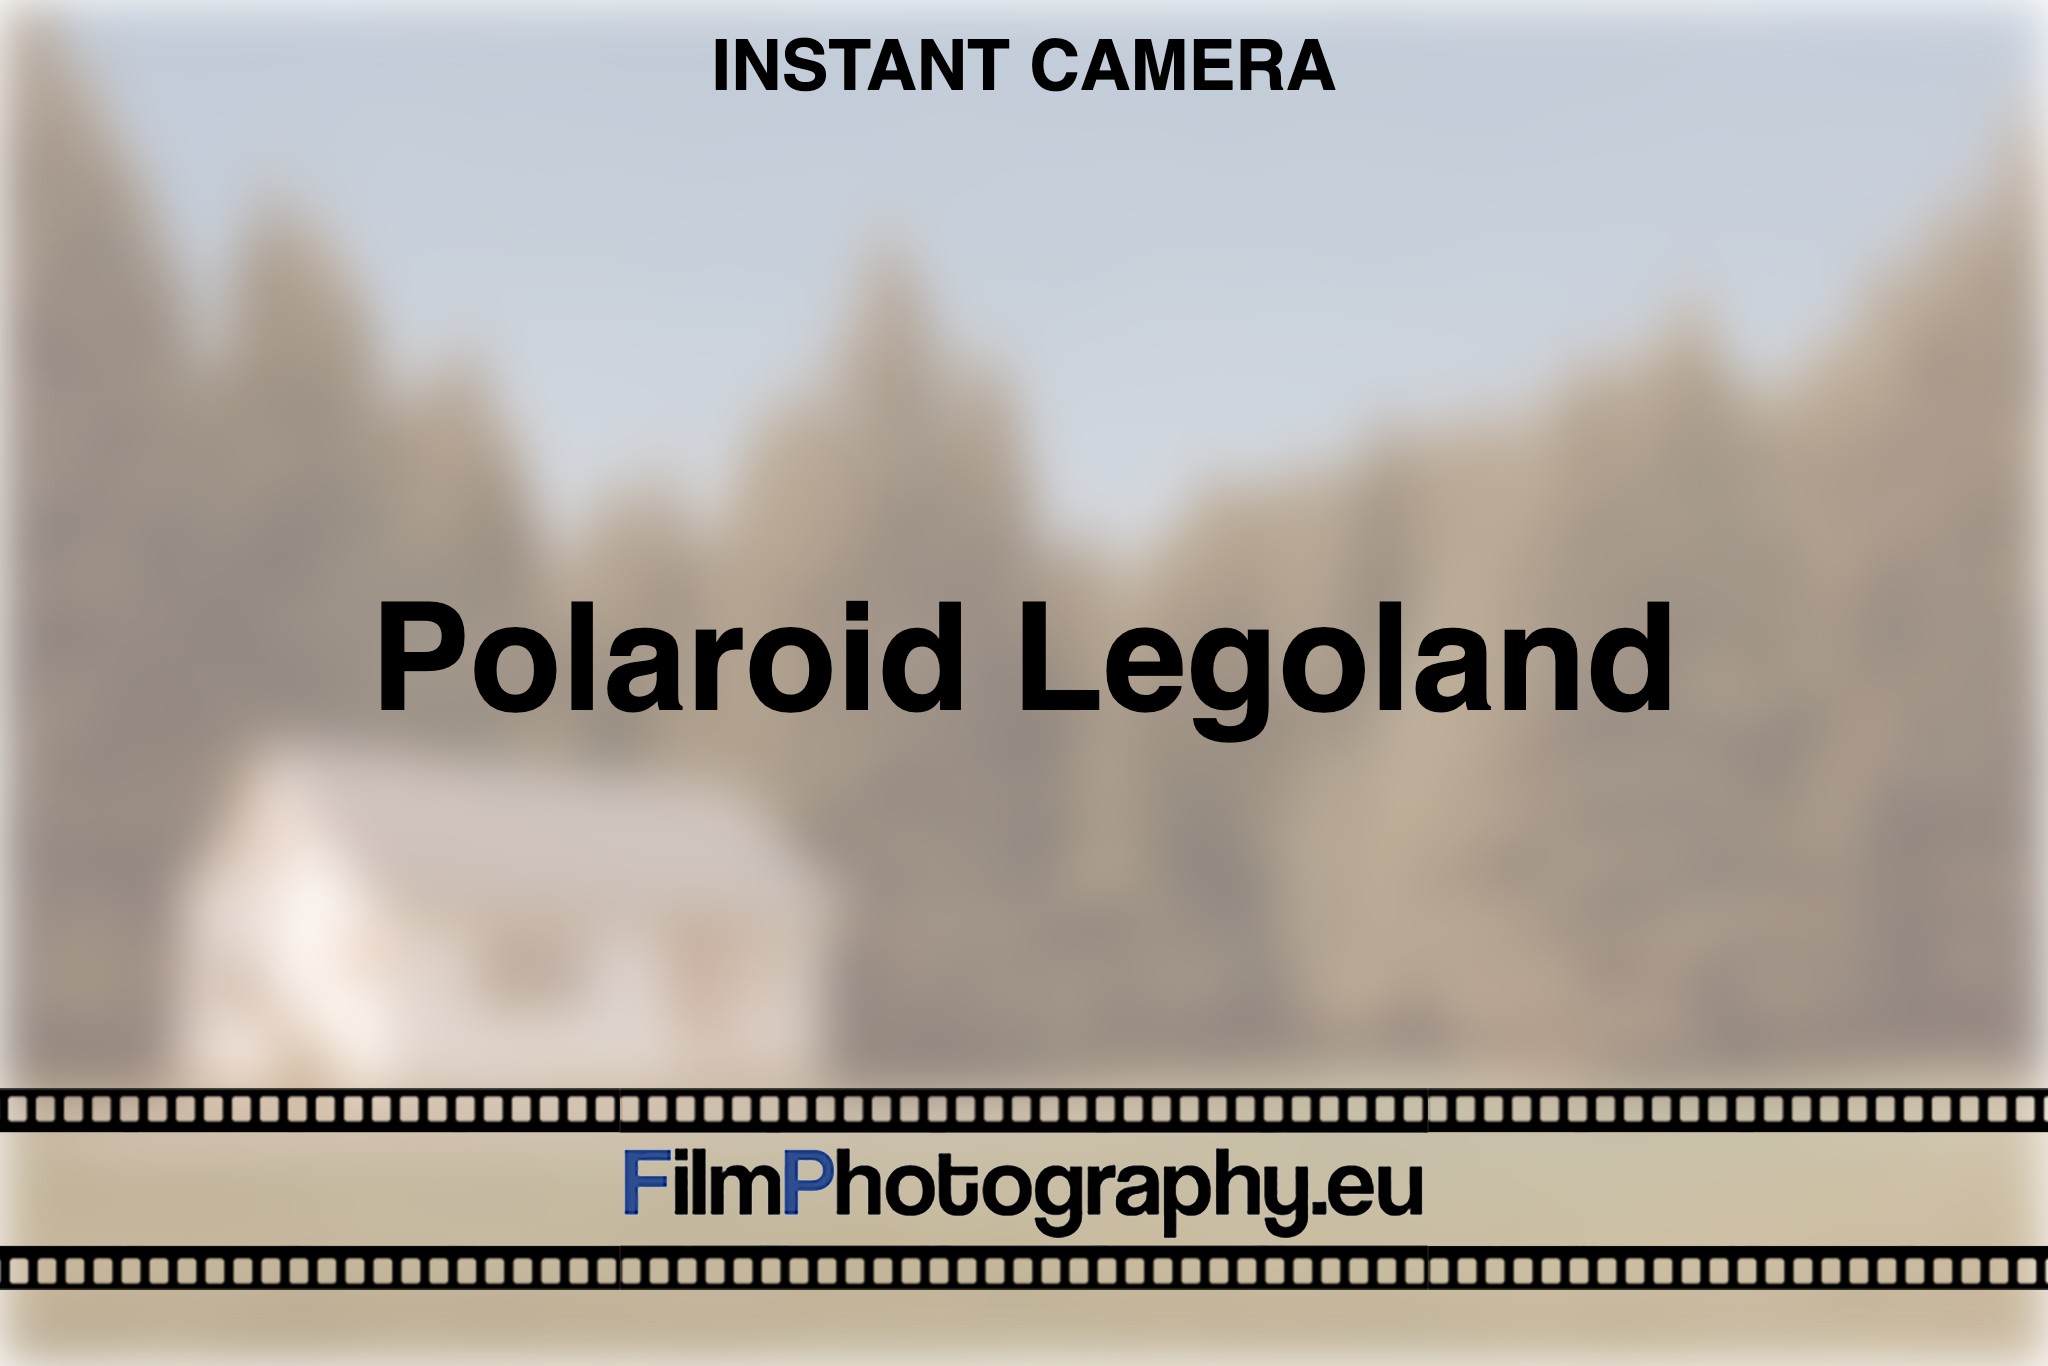 polaroid-legoland-instant-camera-bnv